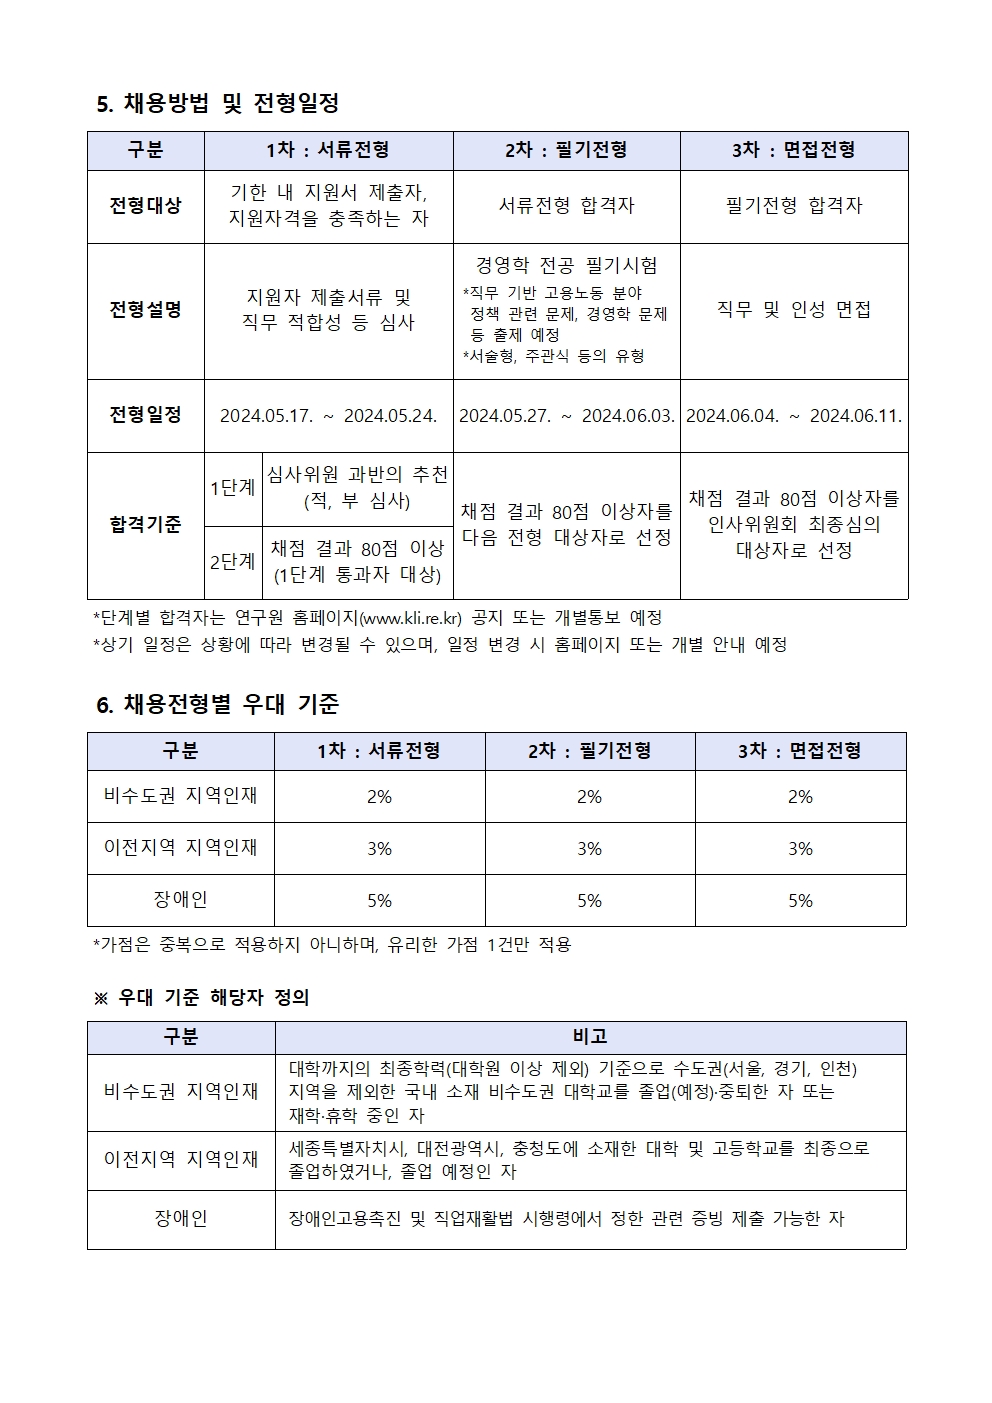 (3/4) 한국노동연구원 연구보조원 채용공고 - 자세한 내용은 하단 참조